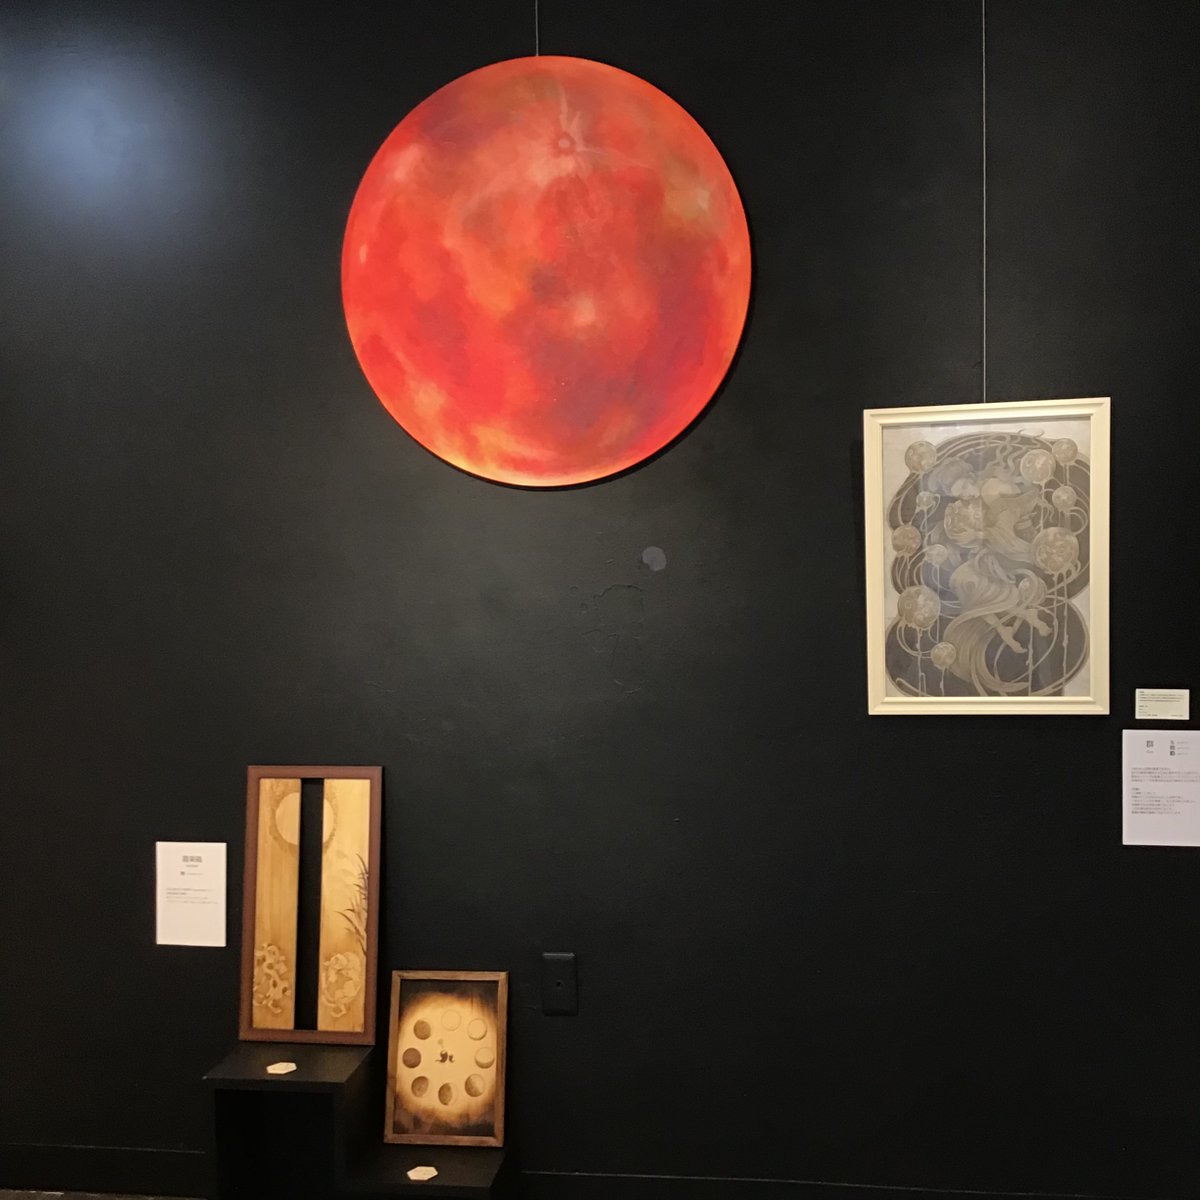 #アートカクテル #月の原画展 企画グループ展 「#TSUKIMI -月-」 2日目 展覧会のメインビジュアルは直径約80cmの大きな赤い月。 昨秋、なちょさんが個展で展示されていた原画なので4か月ぶりの帰還です、お帰りなさい！ 当展の象徴として、会期中、黒壁に鎮座しています。 art-cocktail.net/exhibit-event/…